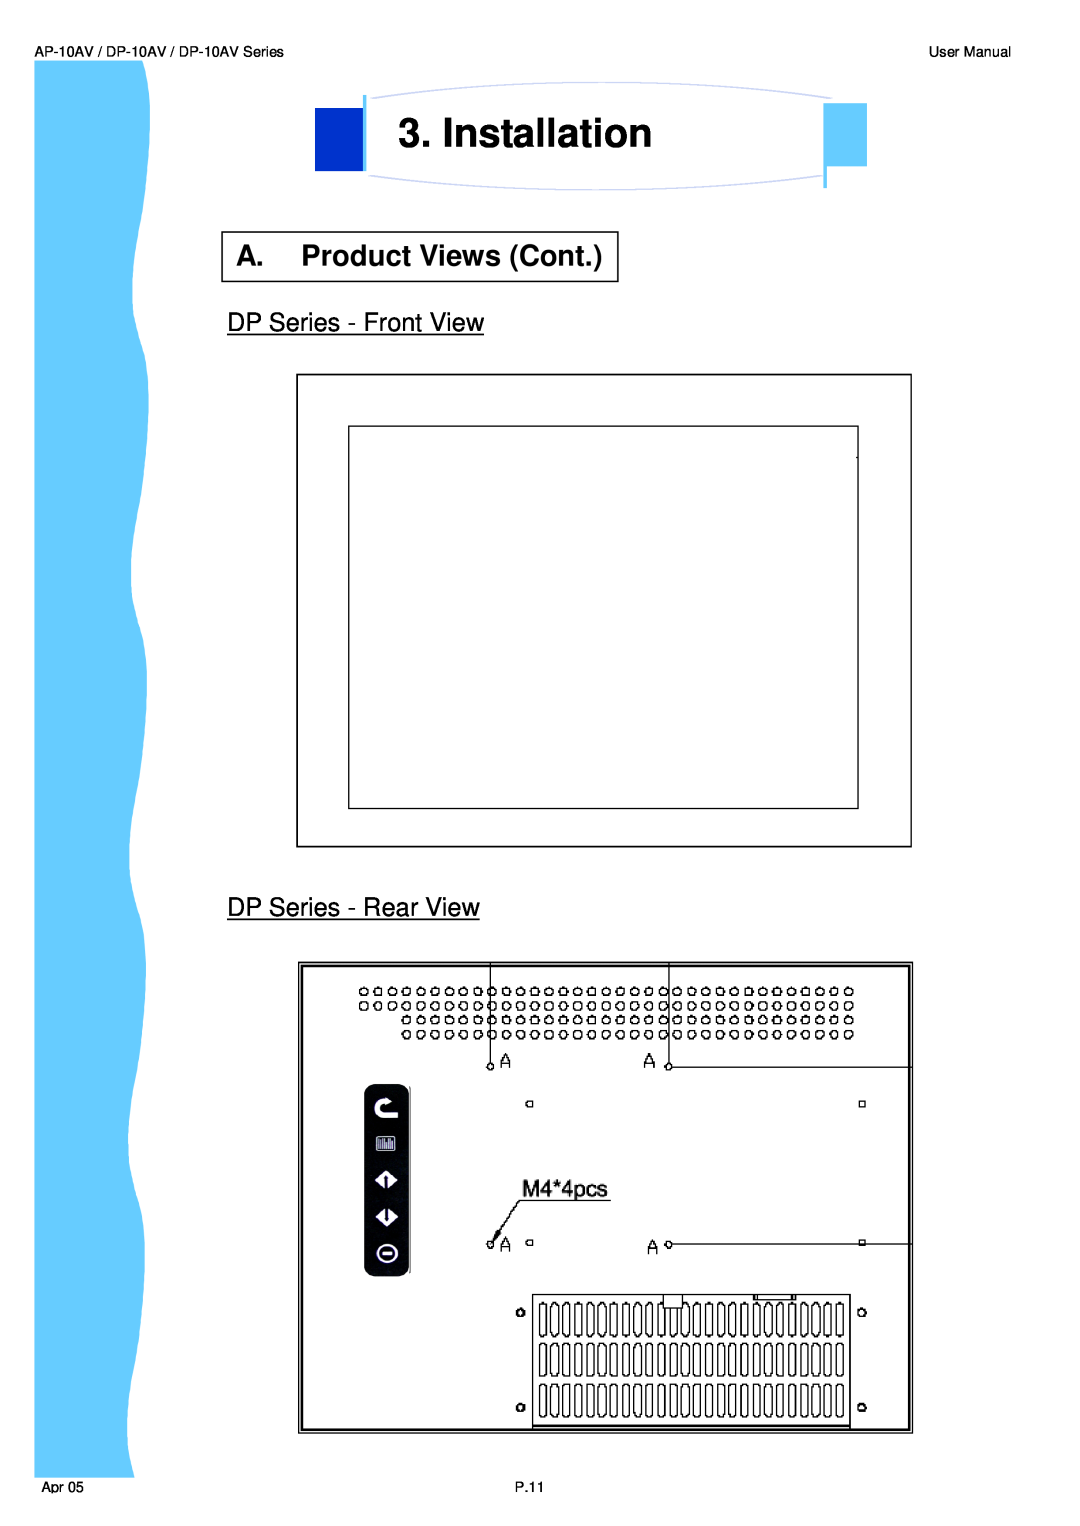 3M UMUV.10-045V2 user manual A. Product Views Cont, Installation, AP-10AV / DP-10AV / DP-10AV Series, User Manual, P.11 